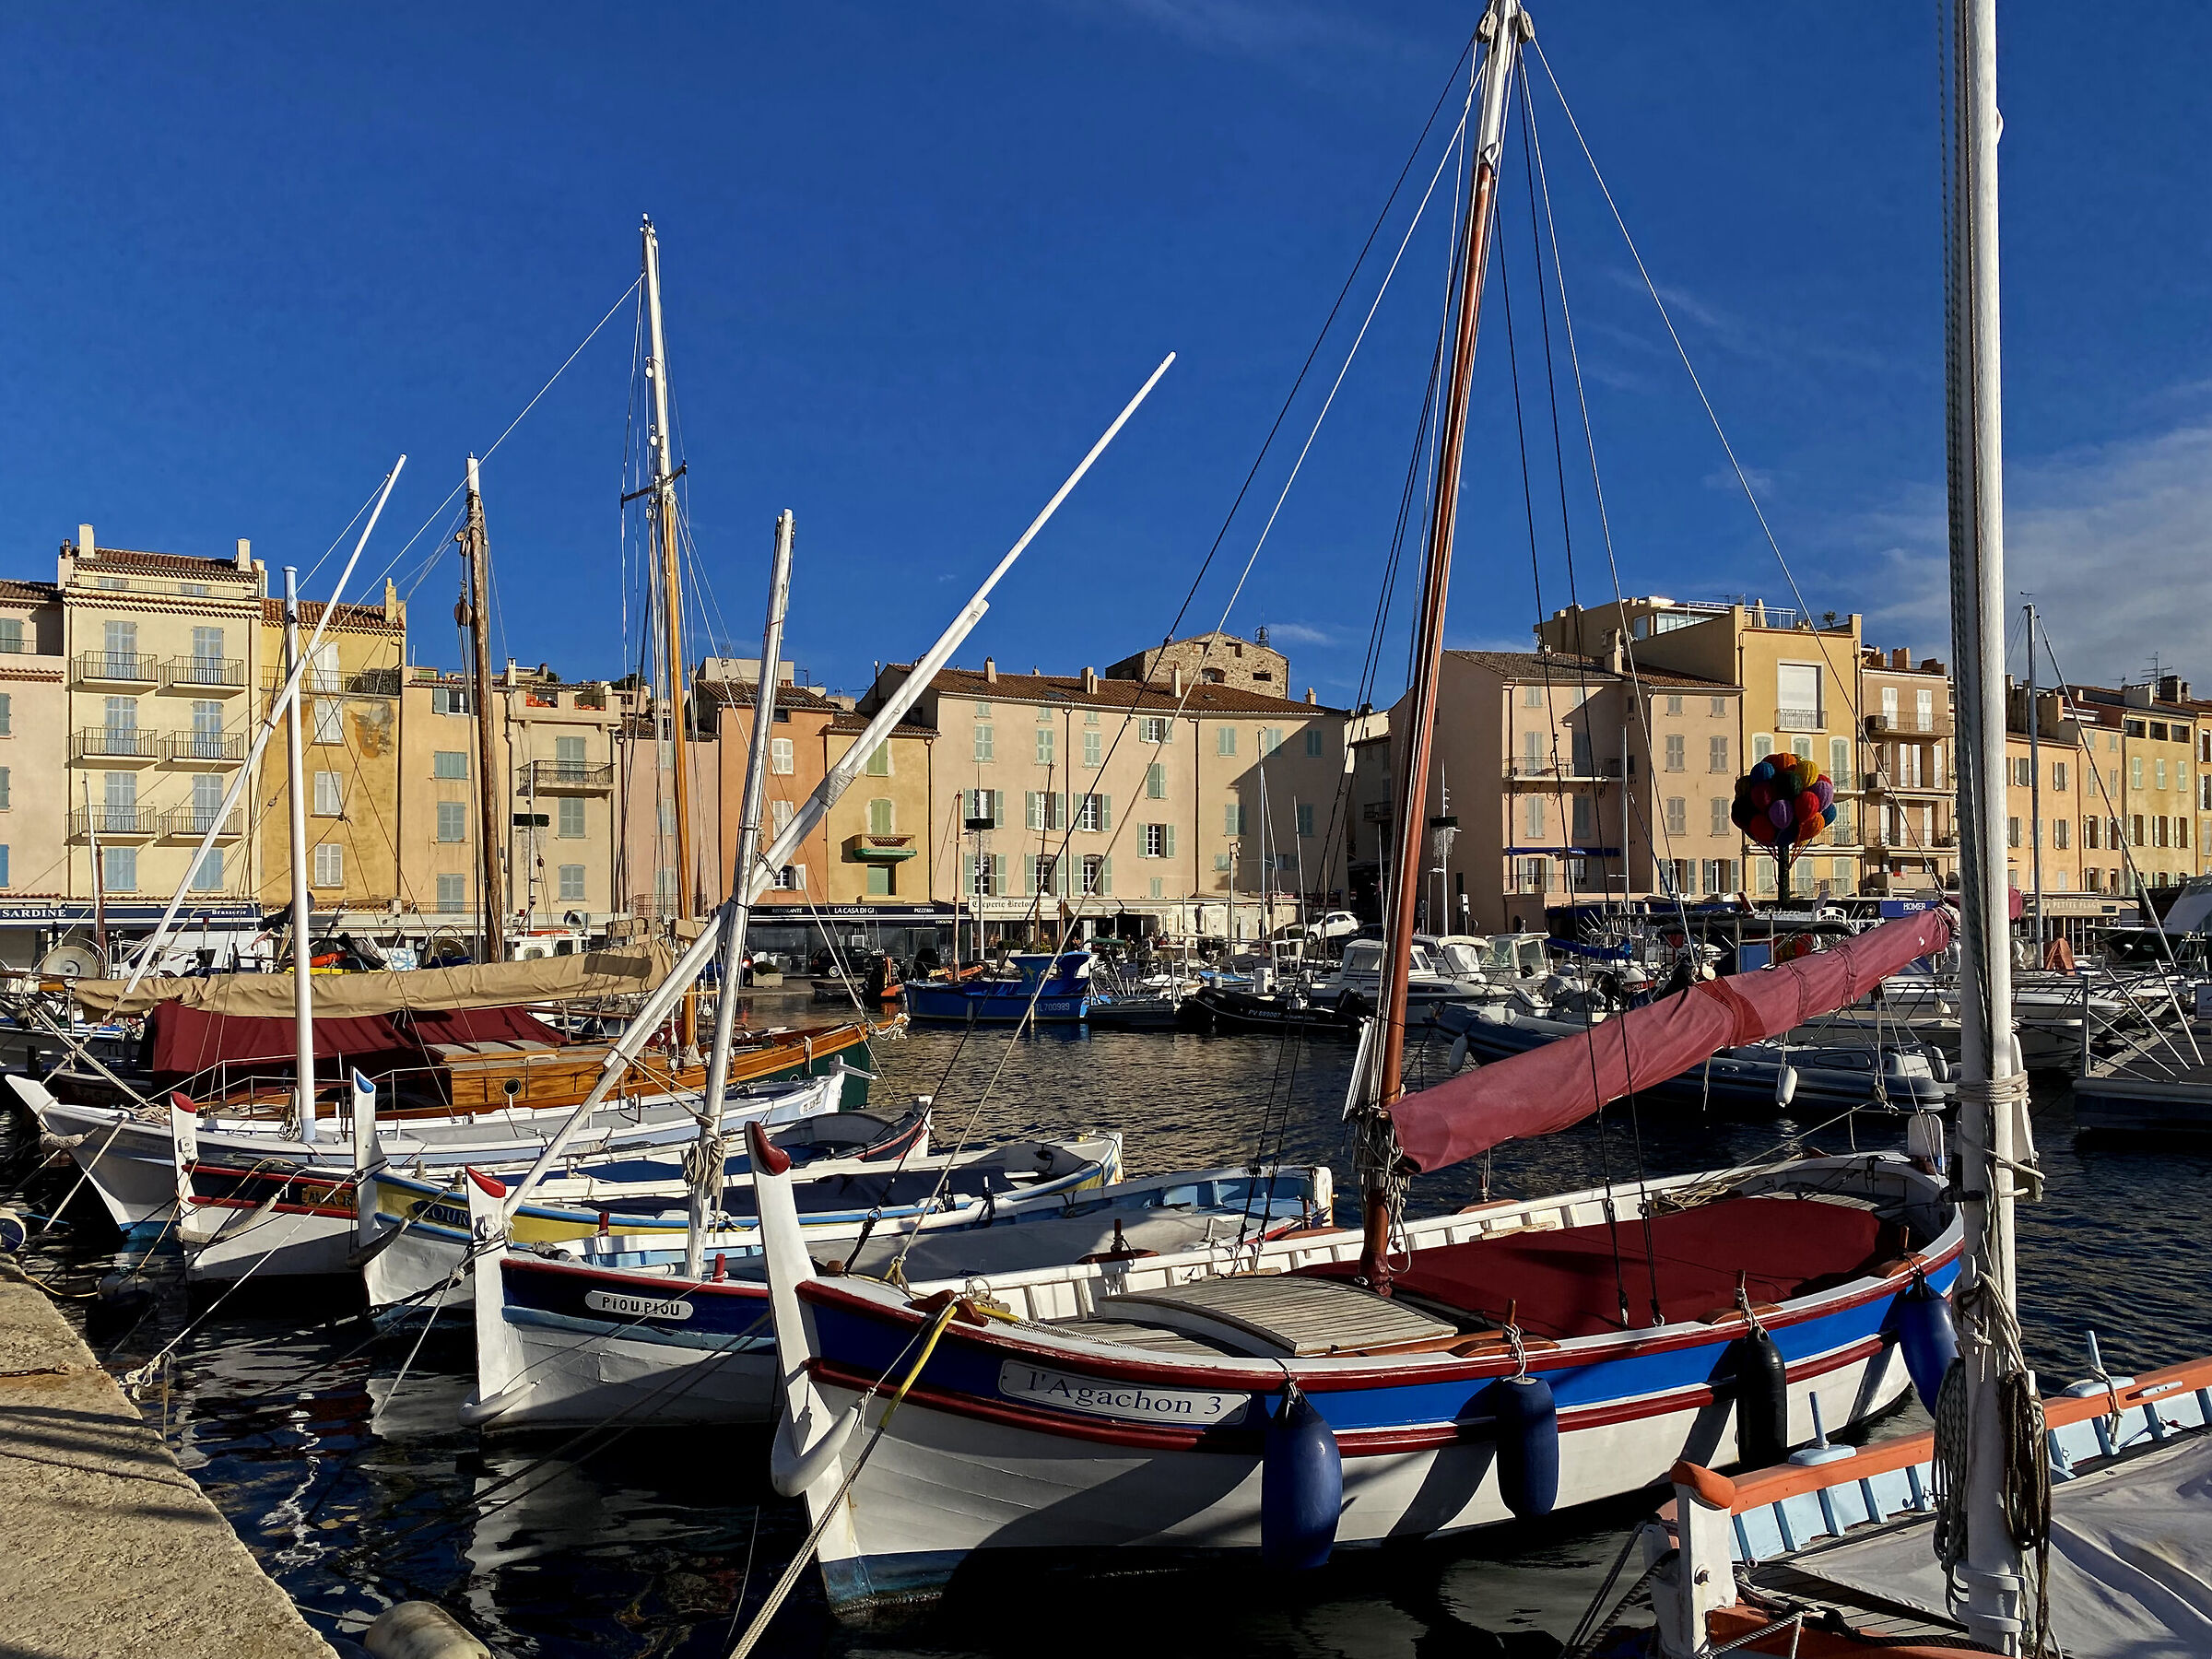 Barche dei pescatori nel porto vecchio di Saint-Tropez...